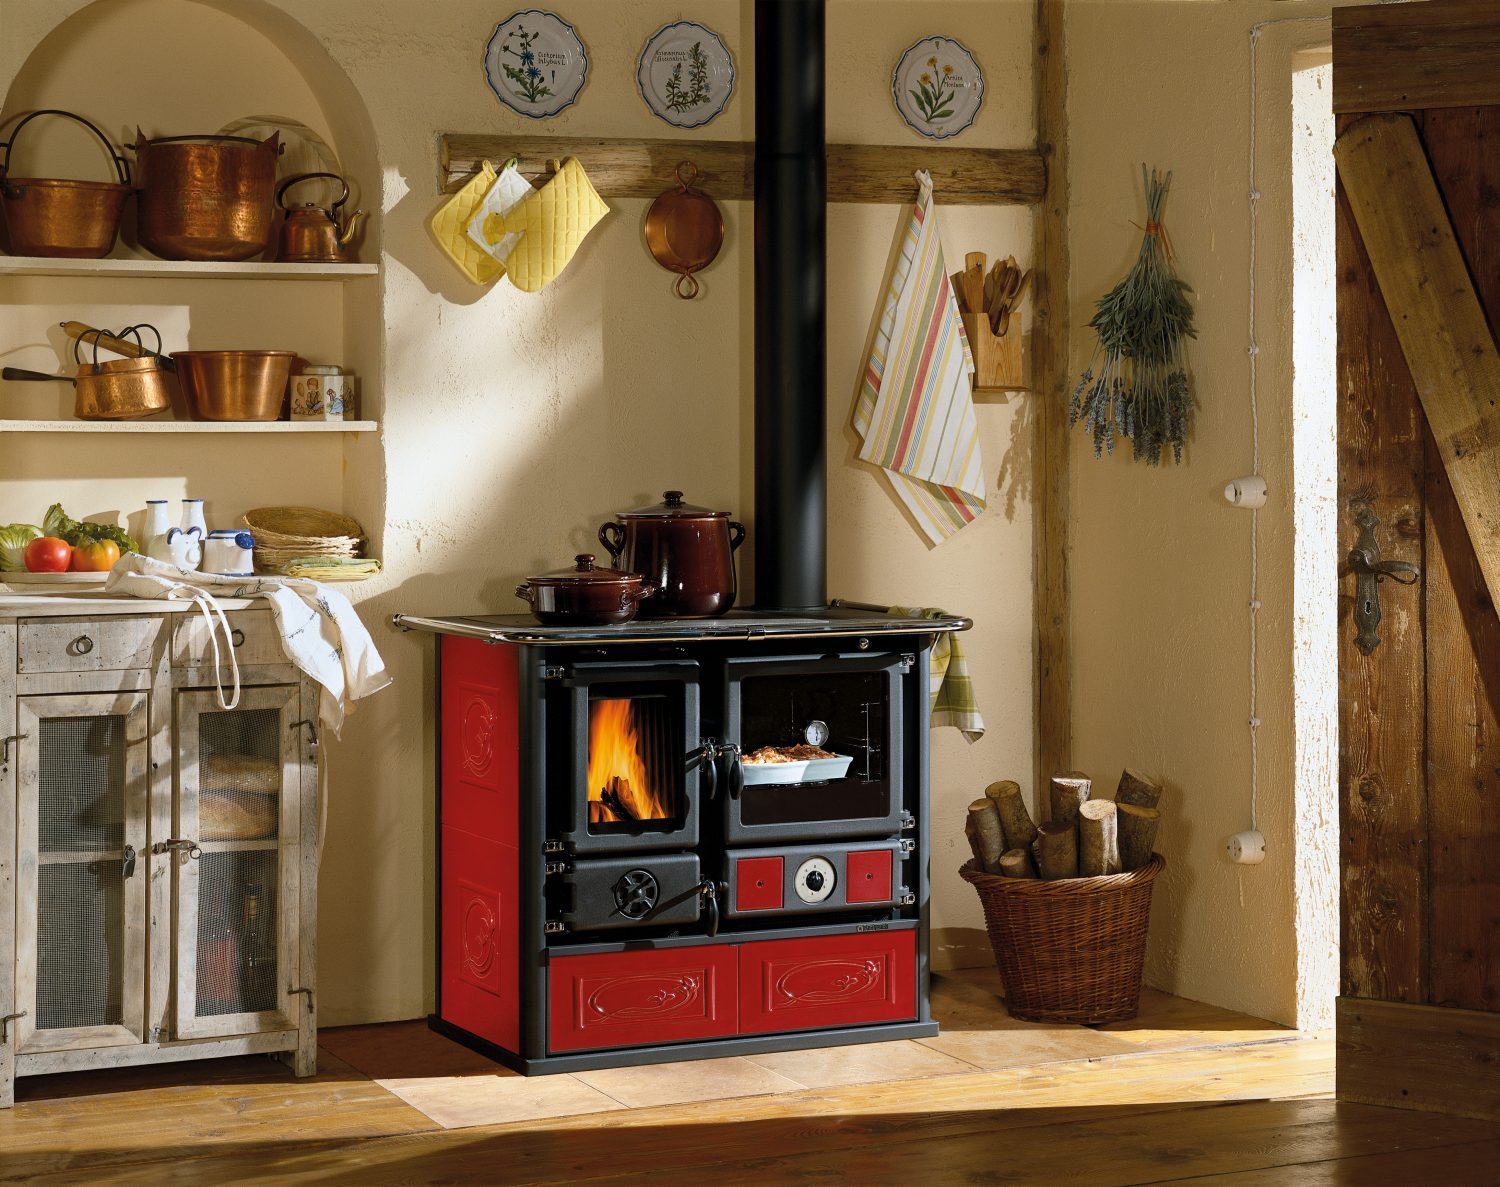 Sporák s výměníkem umožňuje vaření i vytápění celého domu jedním spotřebičem. La Nordica Termorosa, 90 728 Kč (Foto: Centrumvytapeni)